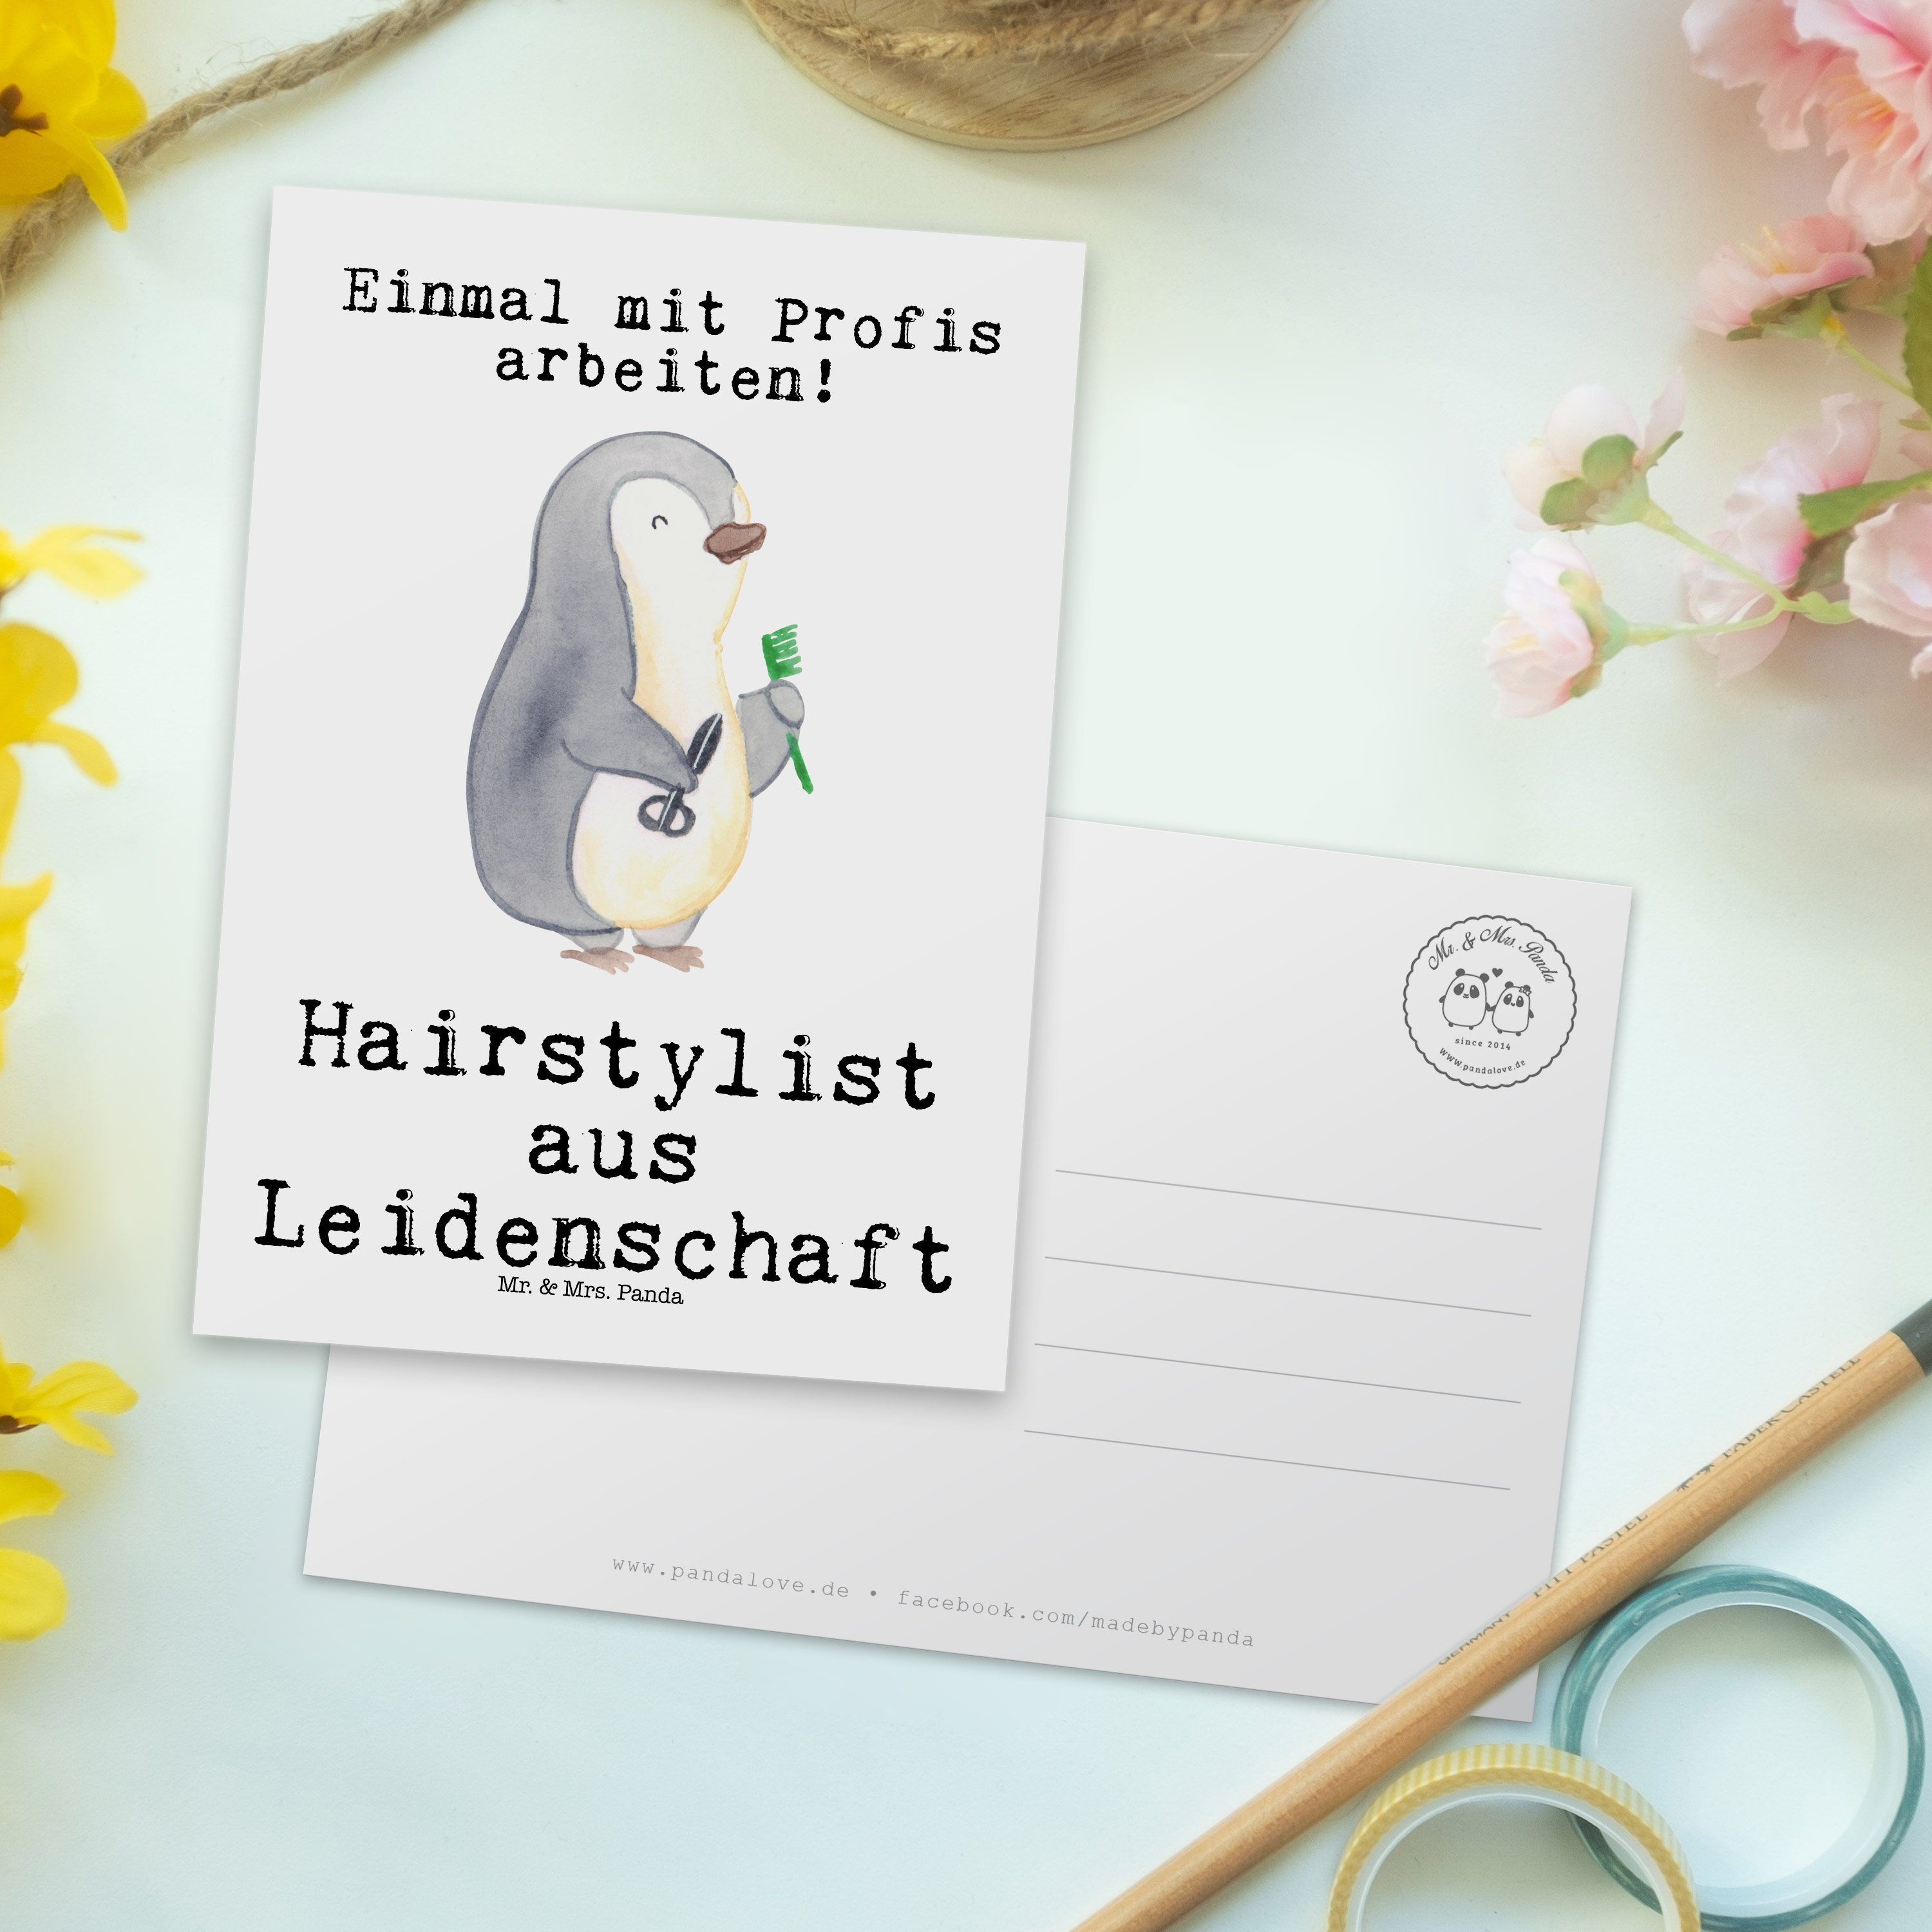 Mr. Geschenk, Panda Coi Postkarte & aus Mrs. Weiß - Frisör, Kollegin, Hairstylist - Leidenschaft